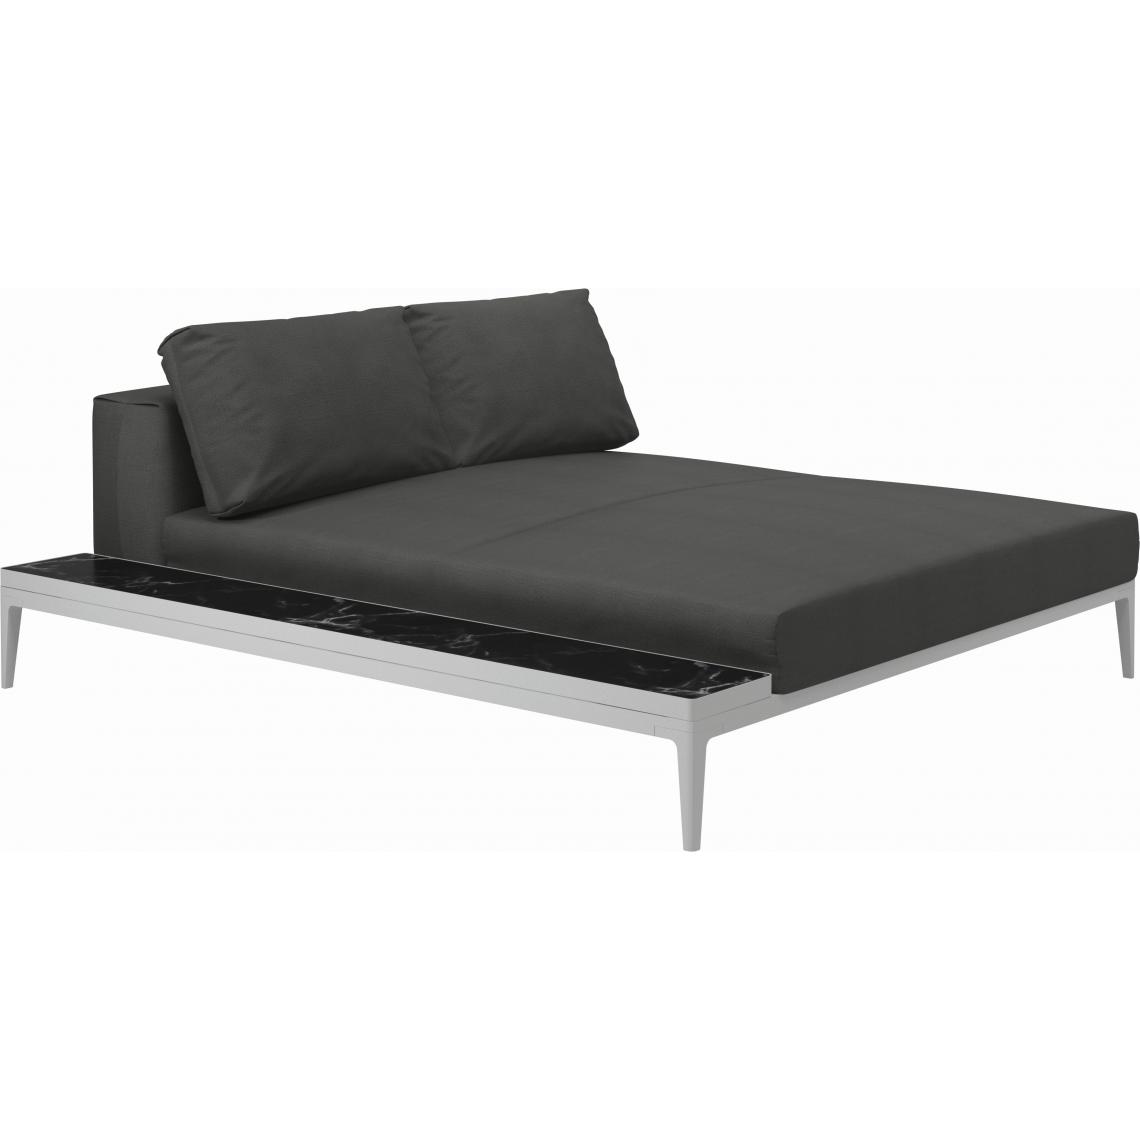 Gloster - Canapé Grid Module de relaxation avec table - Blend Coal - GlosterGridNeroCeramic - blanc - Ensembles canapés et fauteuils